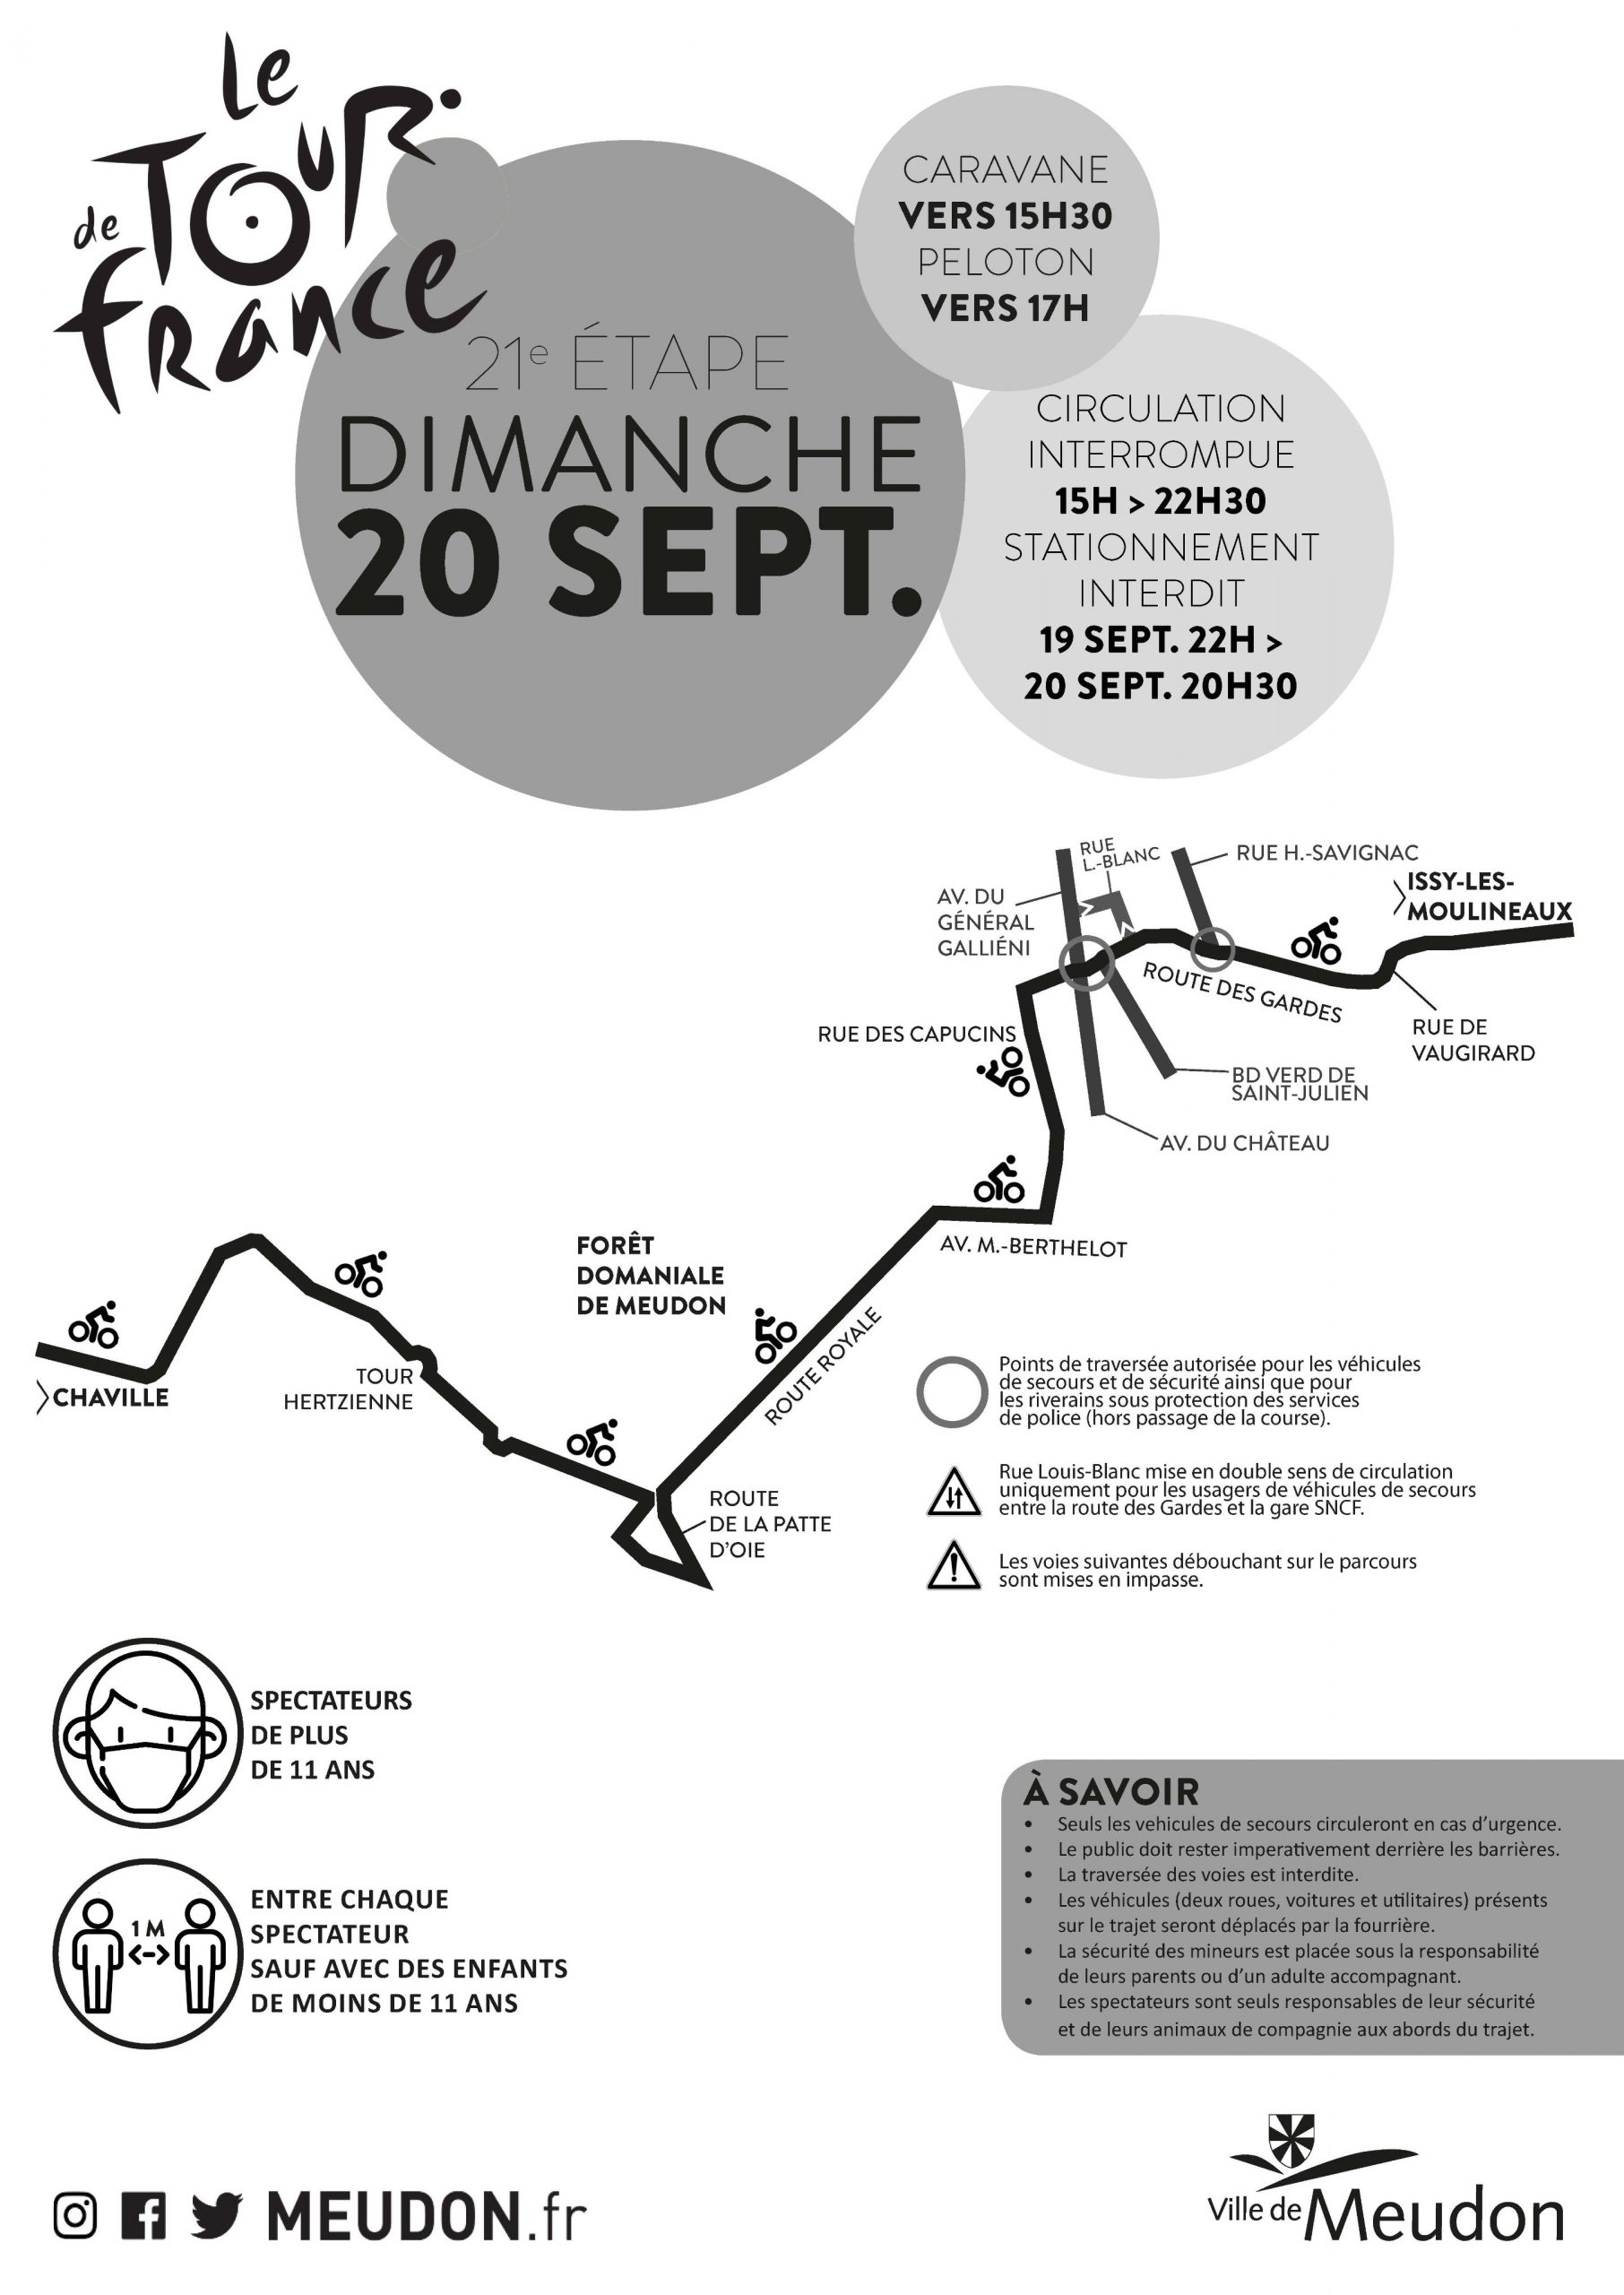 Tour de France 2020 - Meudon